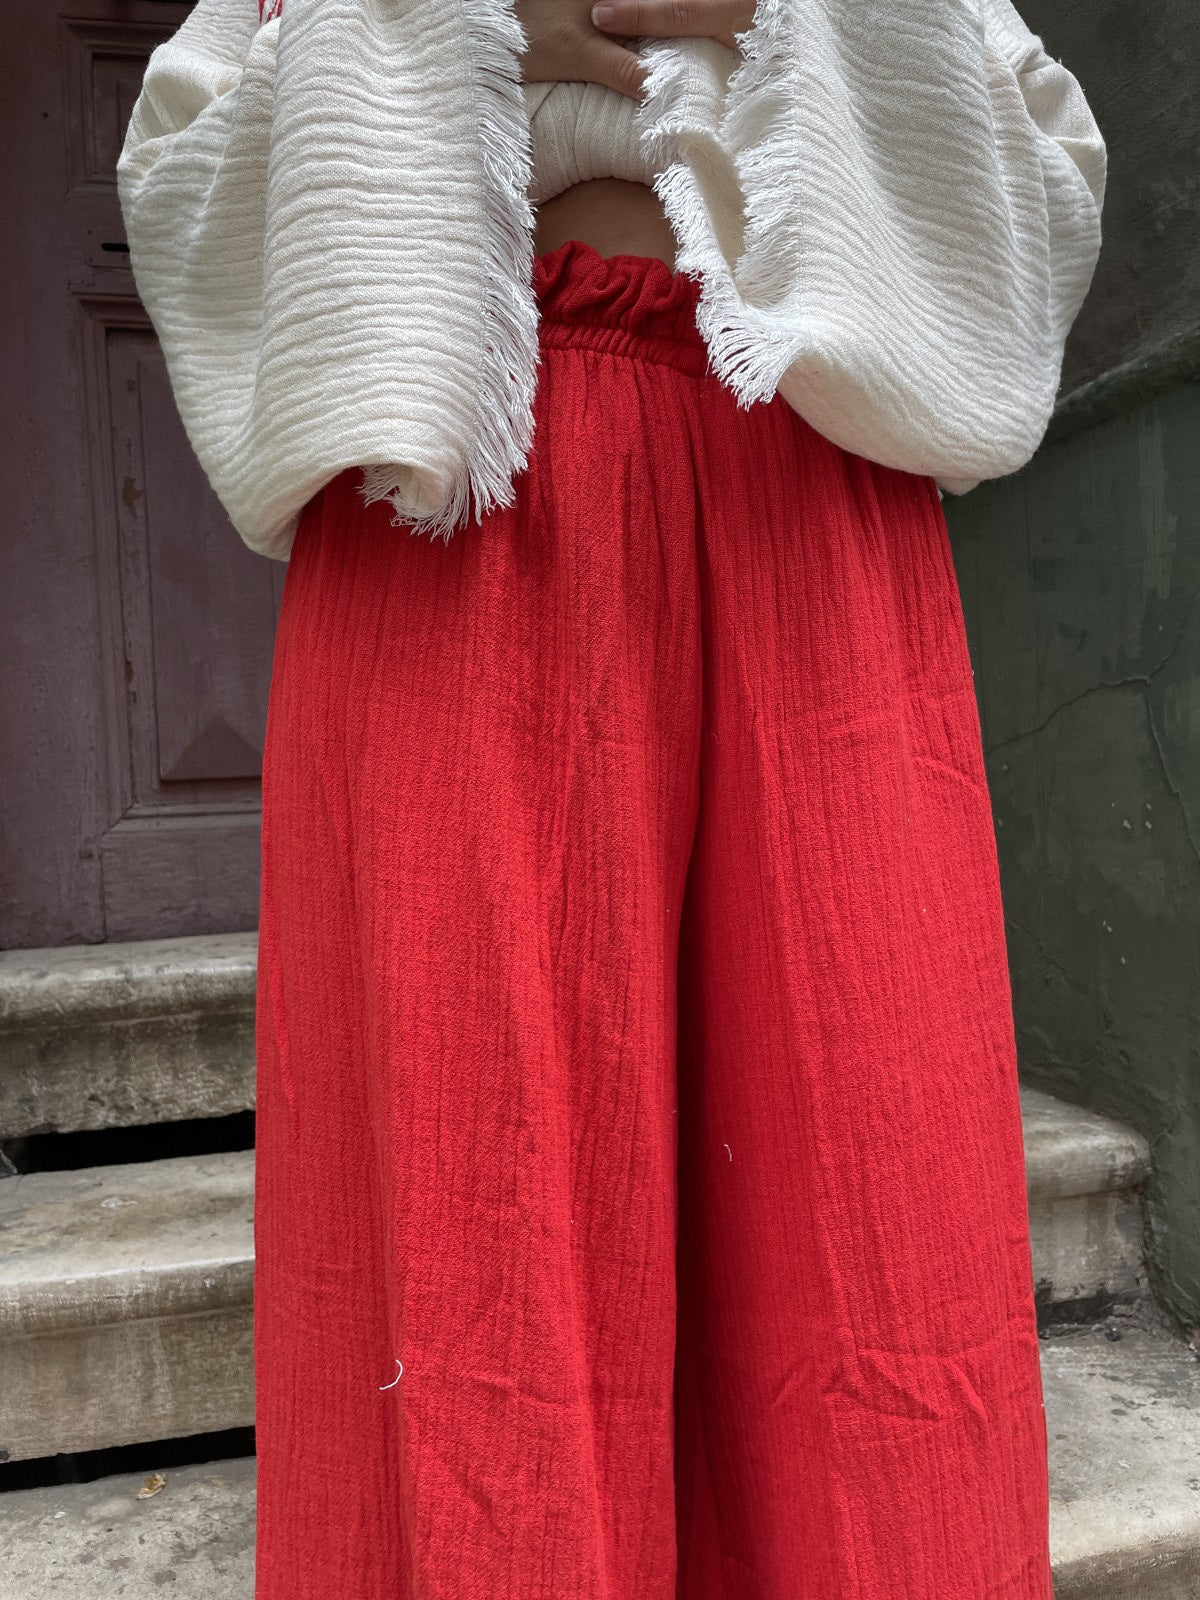 Kırmızı Güneş Bohem Kadın Yoga Doğal Kumaş Kimono Takım Yoga Takımı